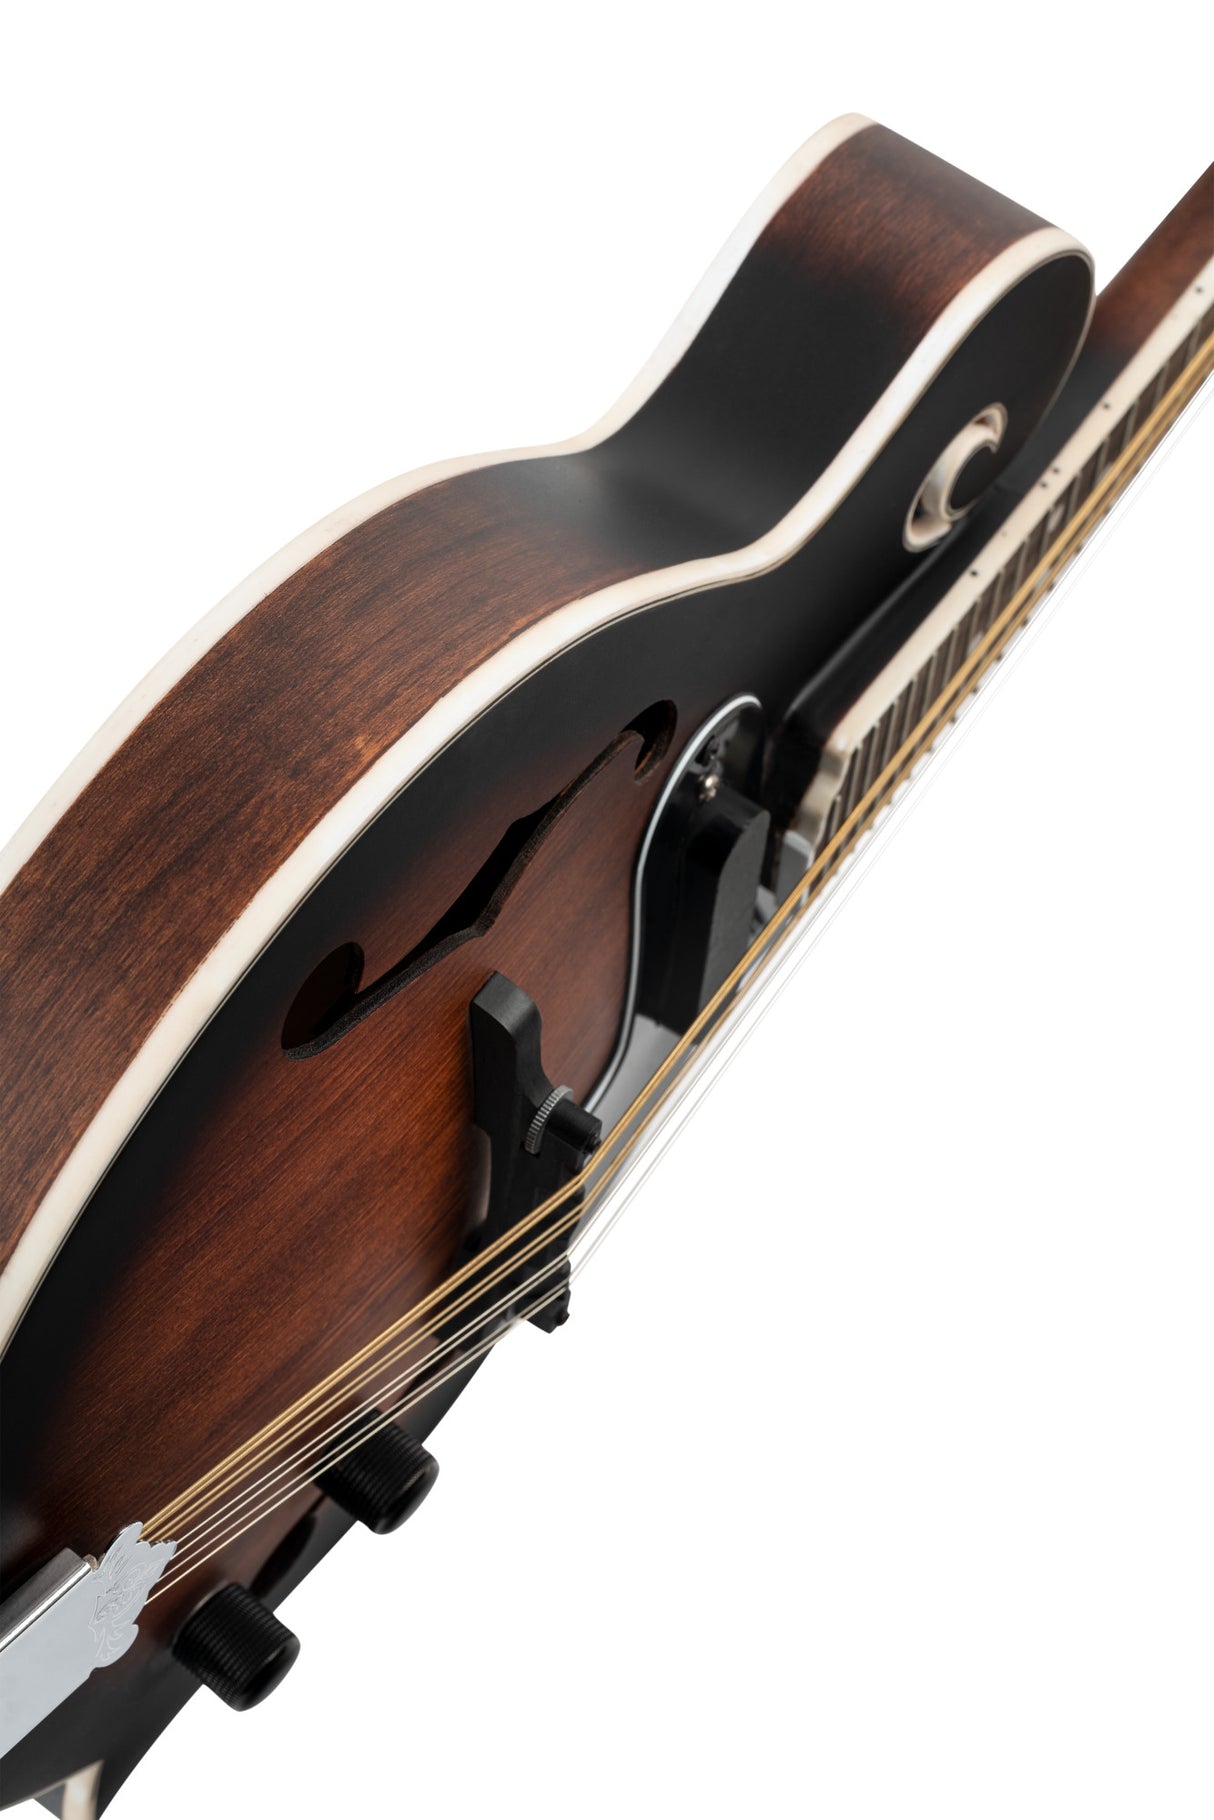 ORTEGA Americana Series F-Style Mandoline 8 String mit Pickup - Satin Whiskey Burst / Chrom HW - Musik-Ebert Gmbh